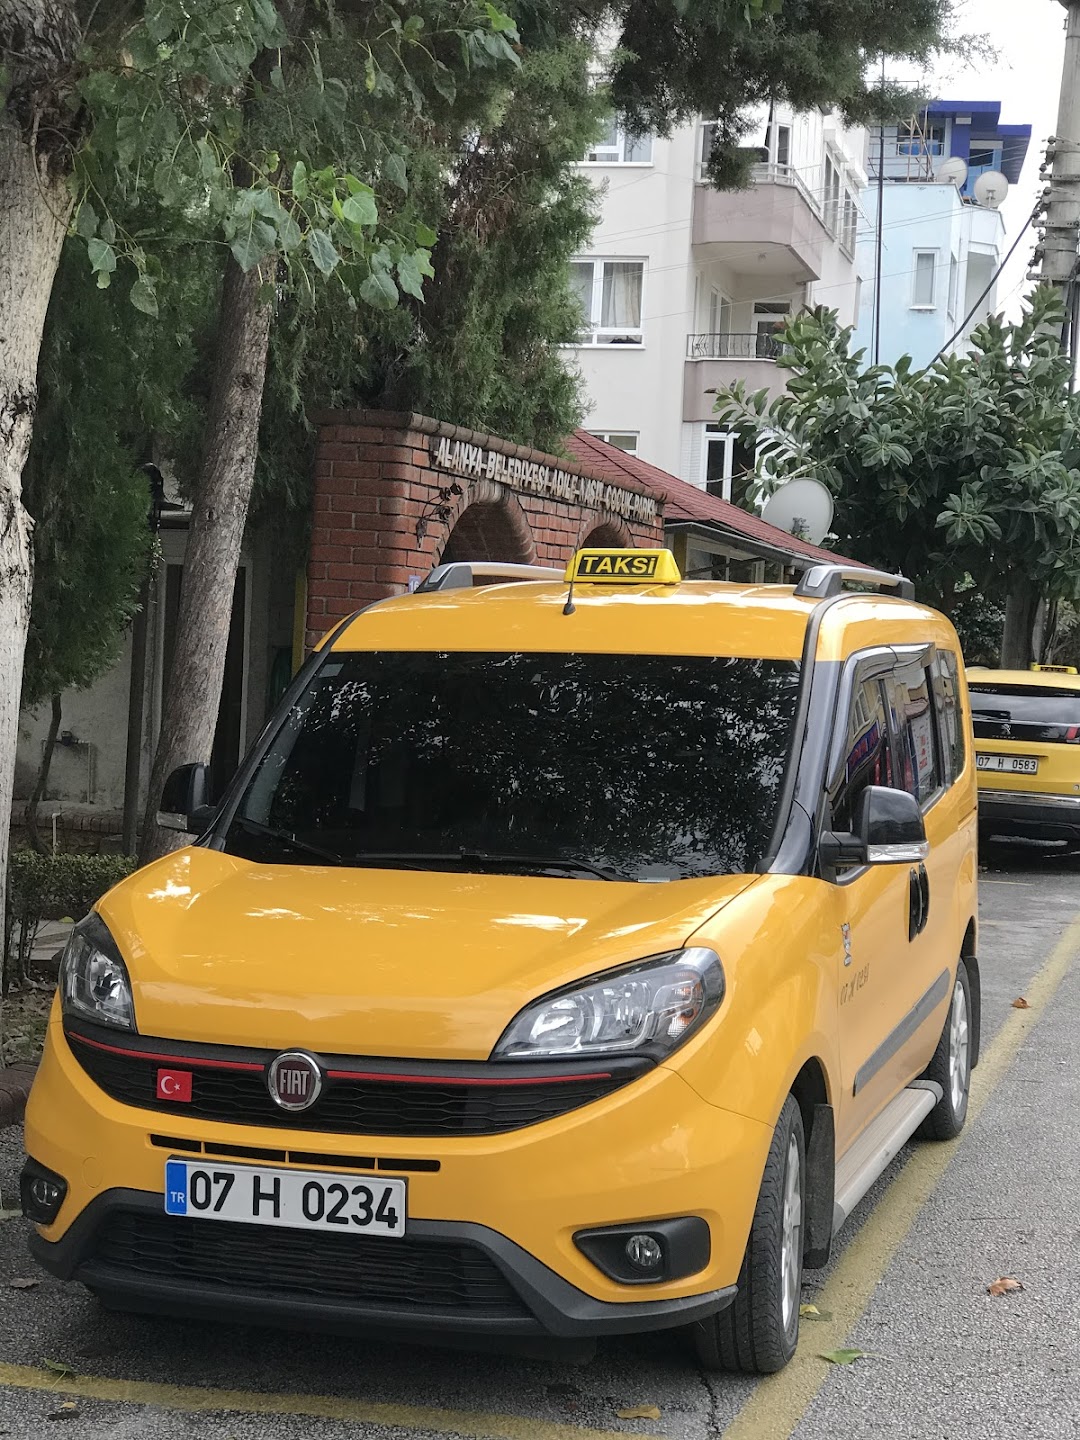 Saray Taksi